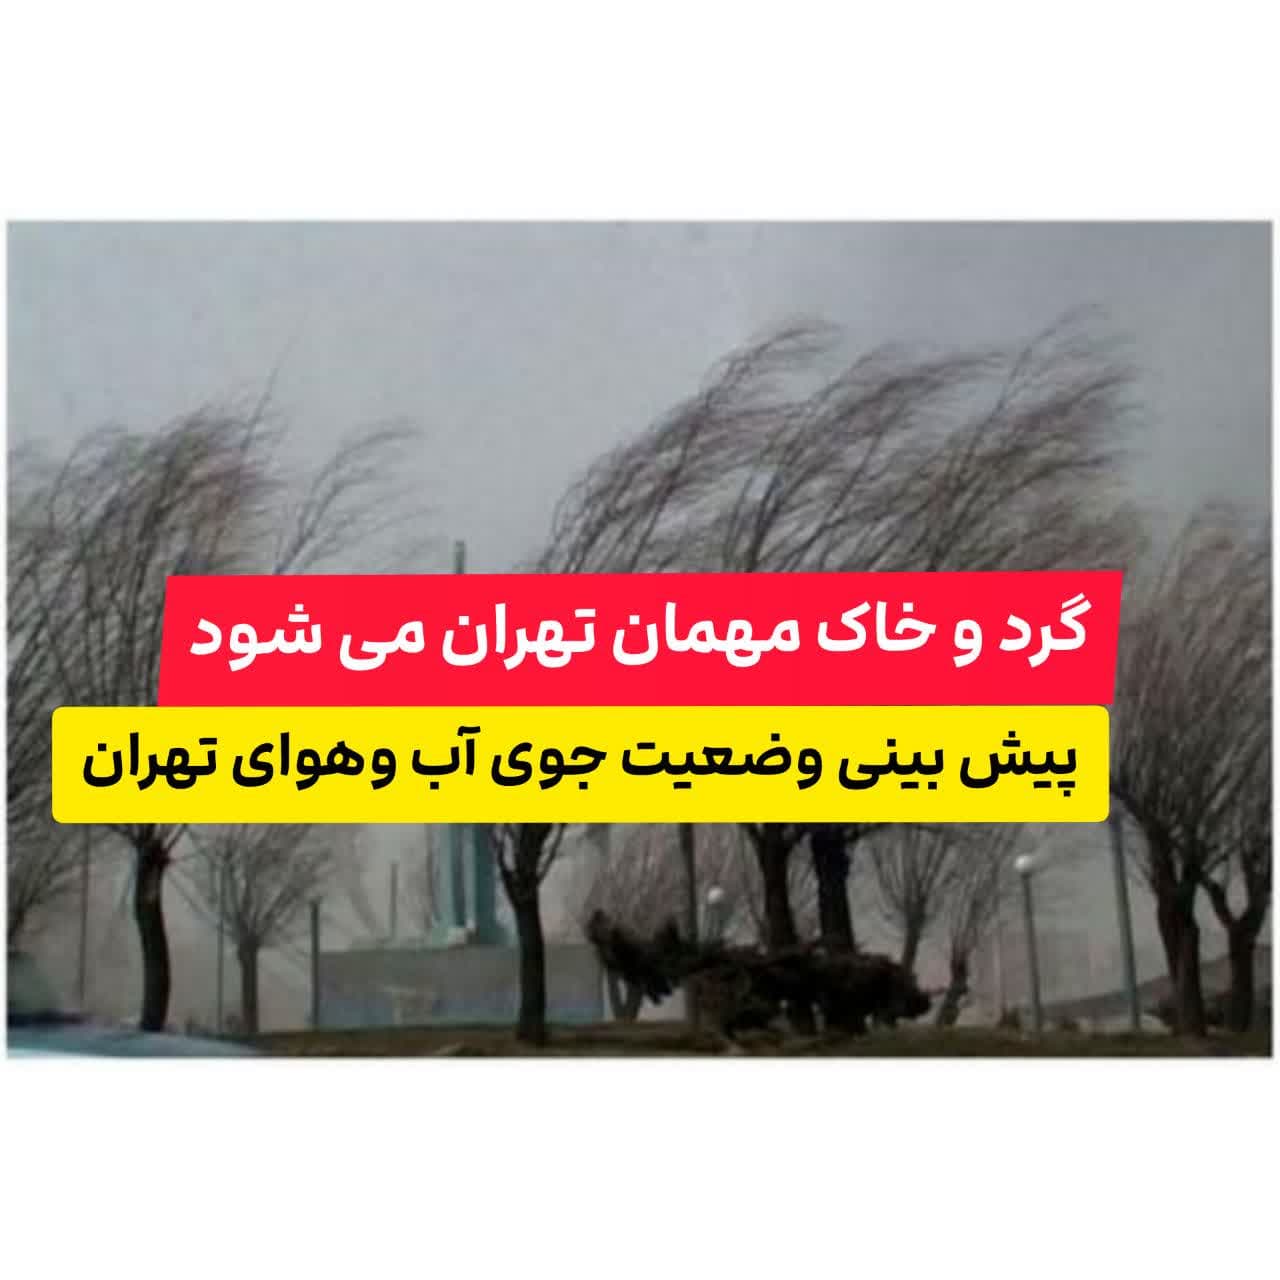 ?فردا گرد و خاک میهمان تهران می شود ? با گرمای بیشتر